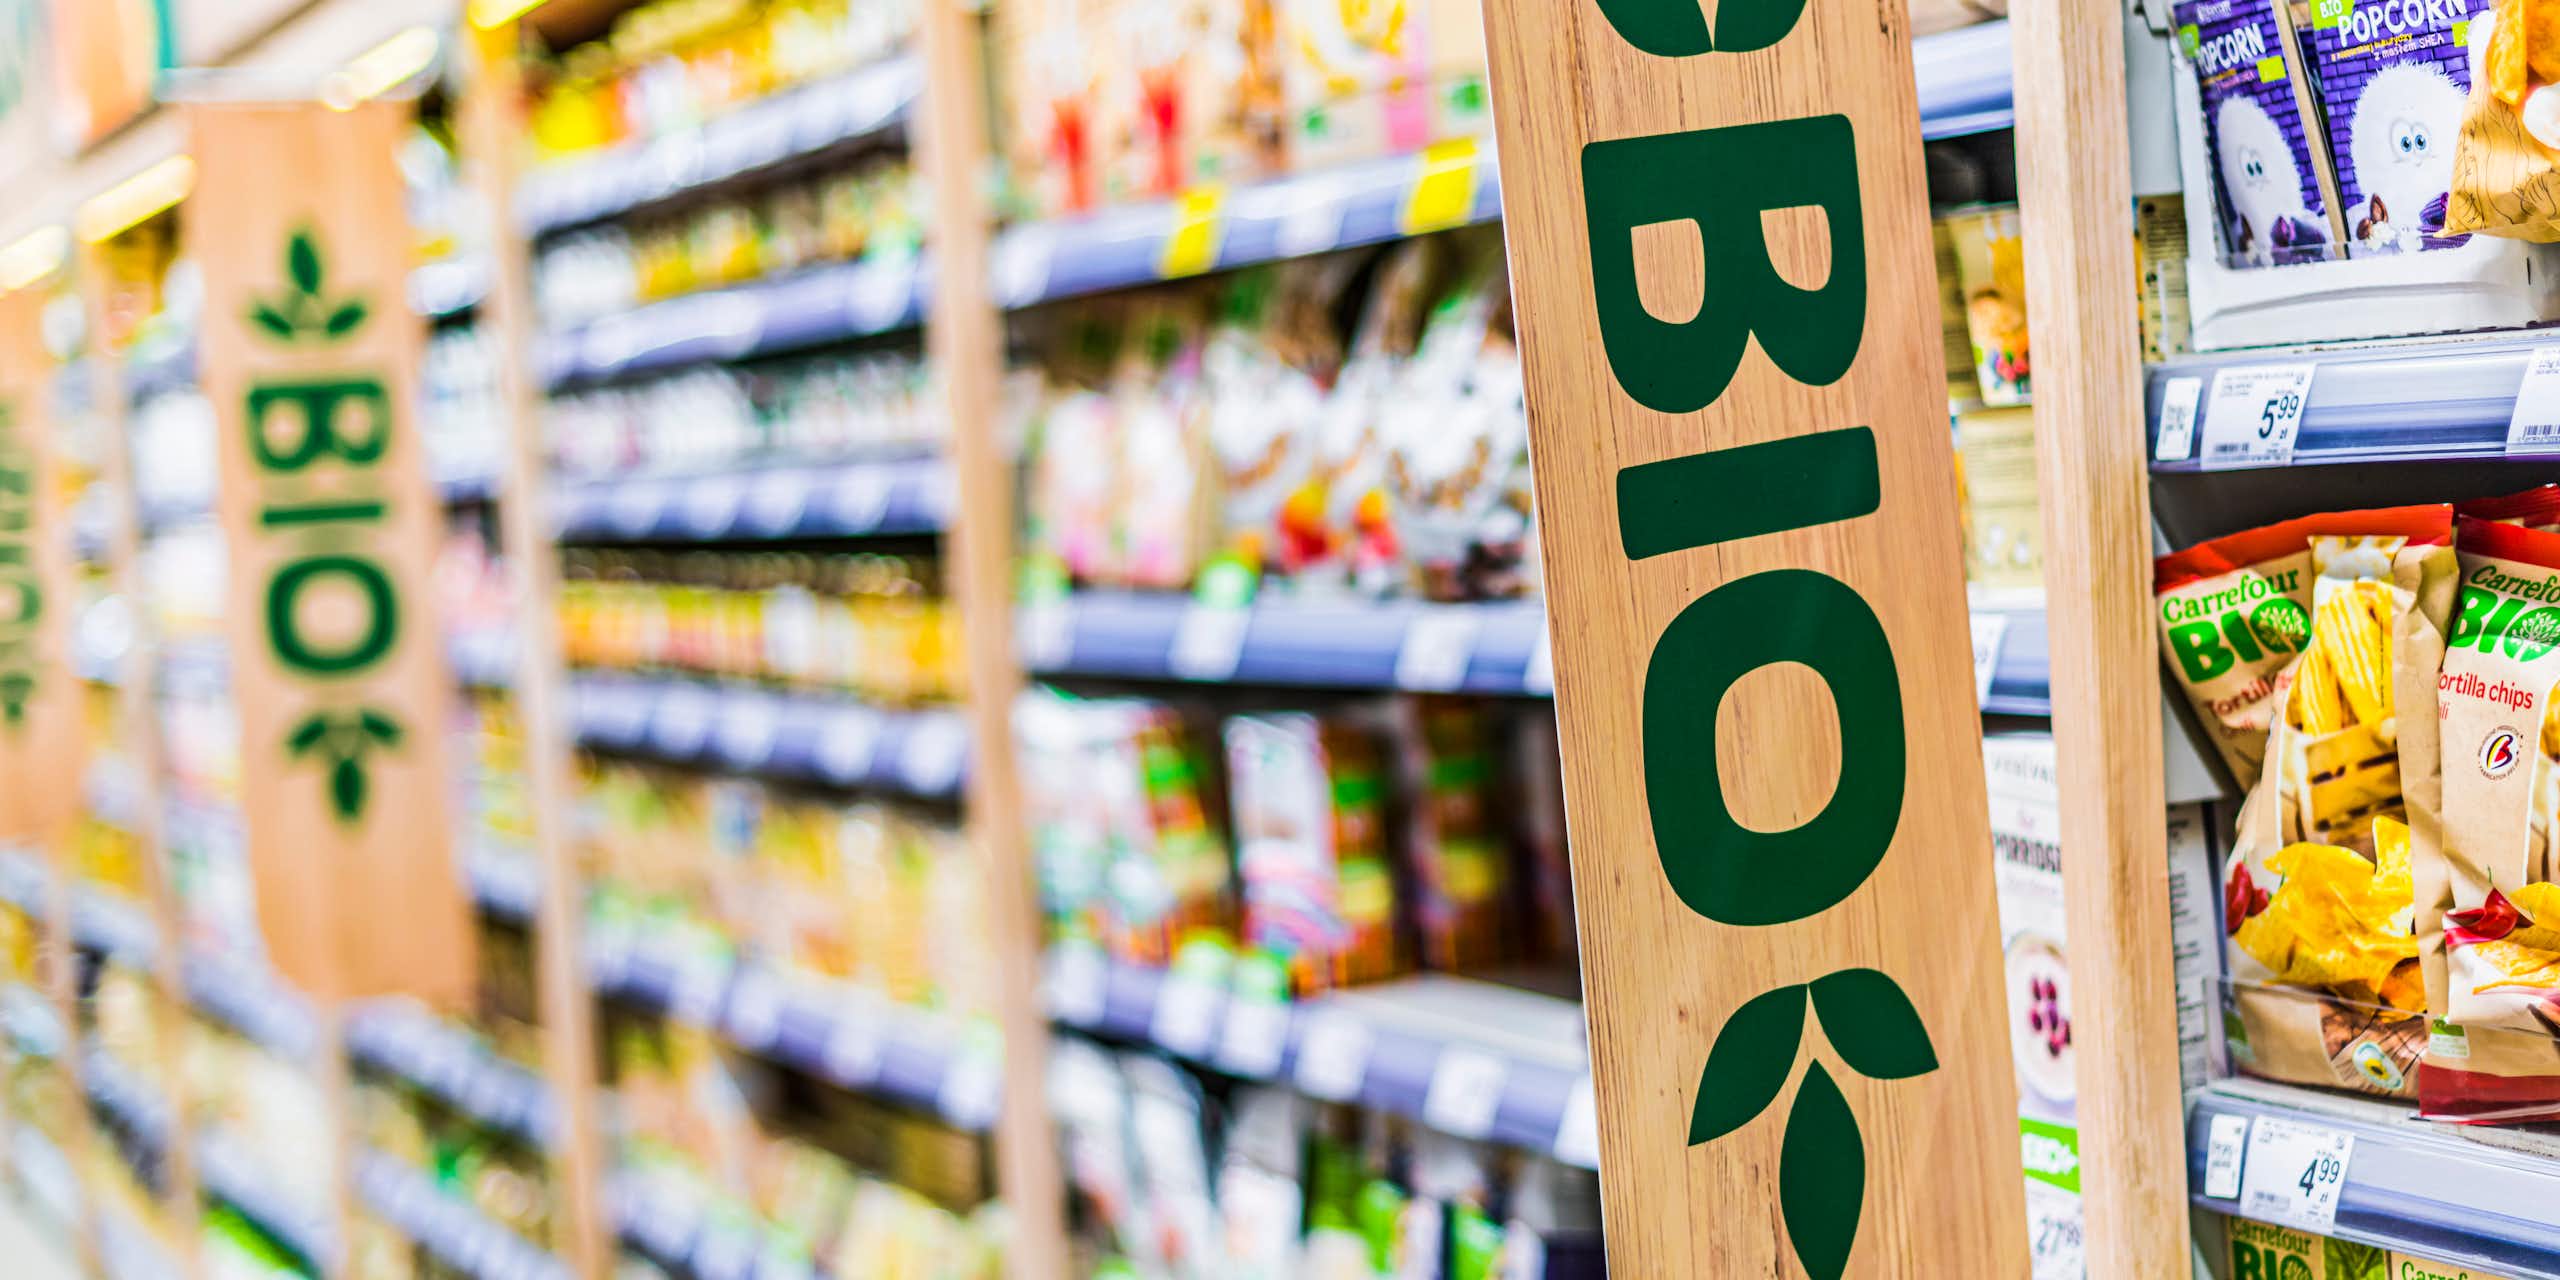 L’alimentation bio toujours boudée malgré la réduction des écarts des prix avec les produits conventionnels